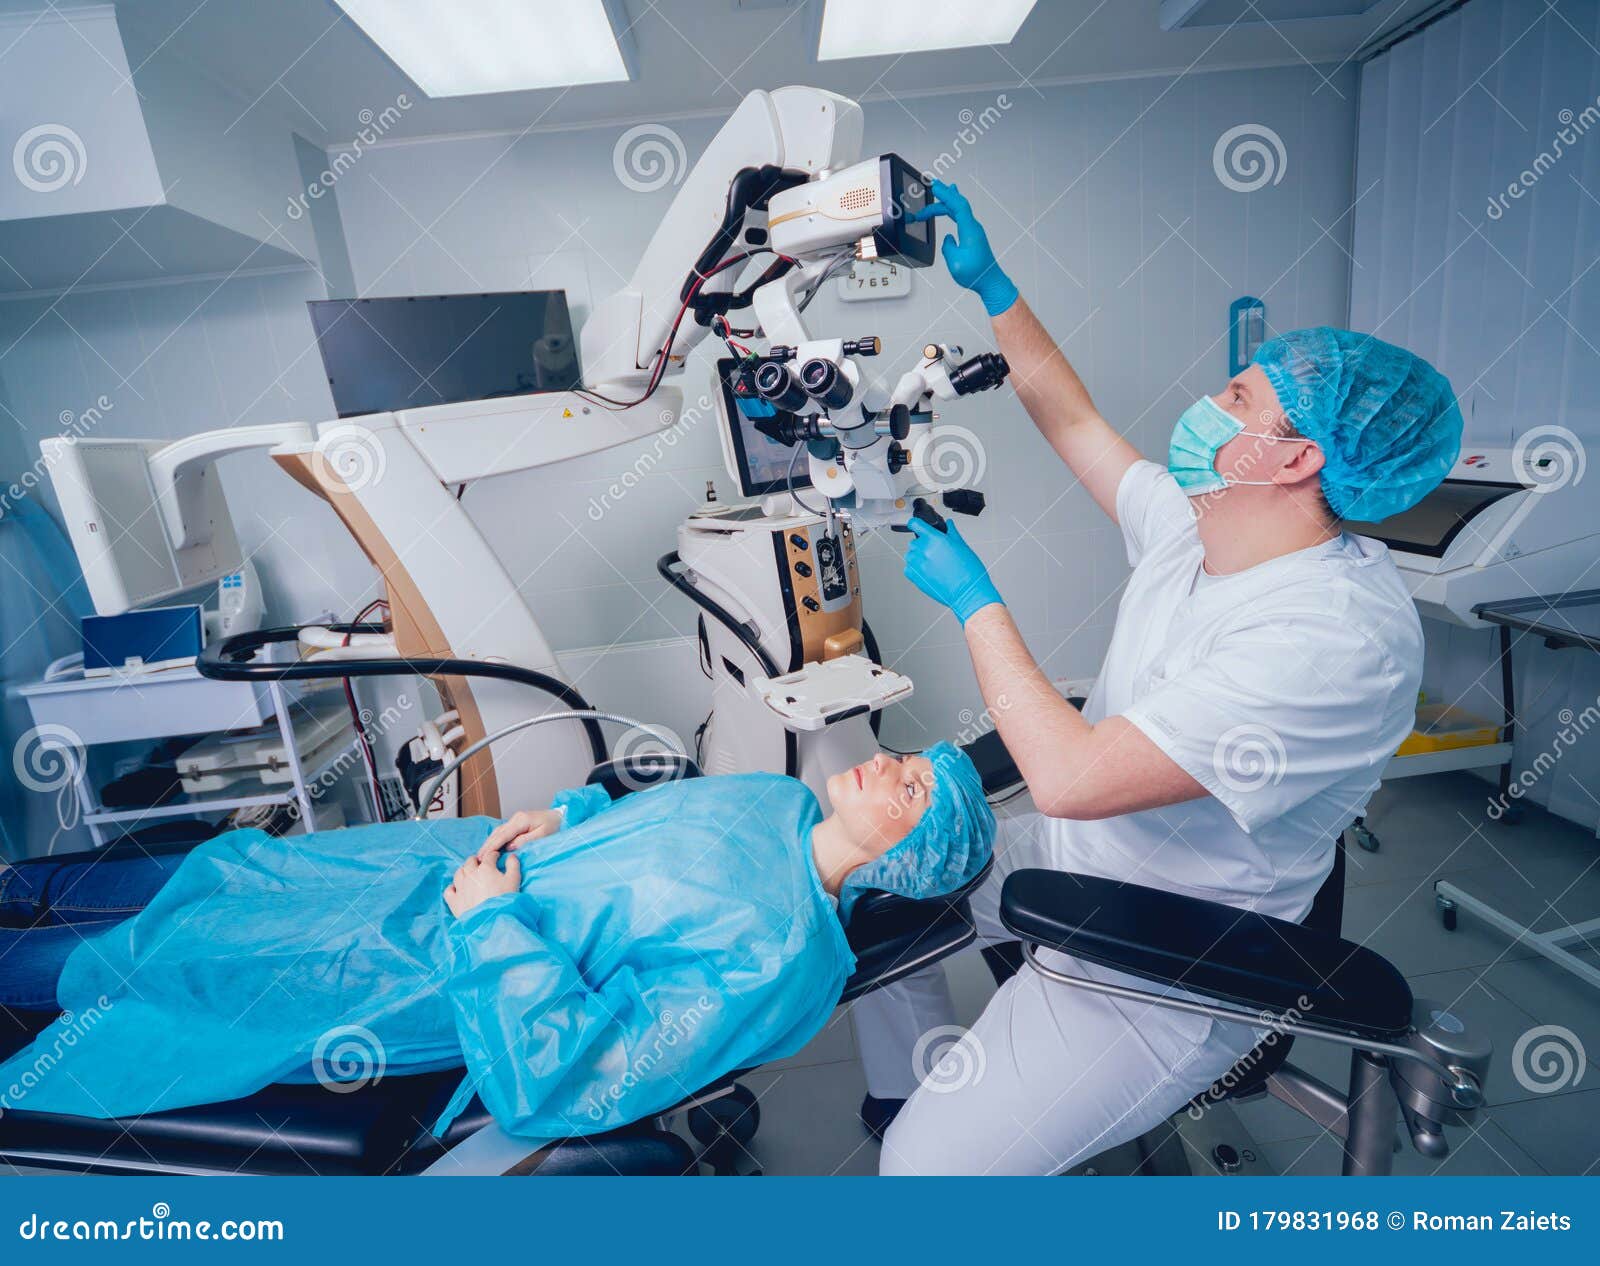 echipament medical oftalmic